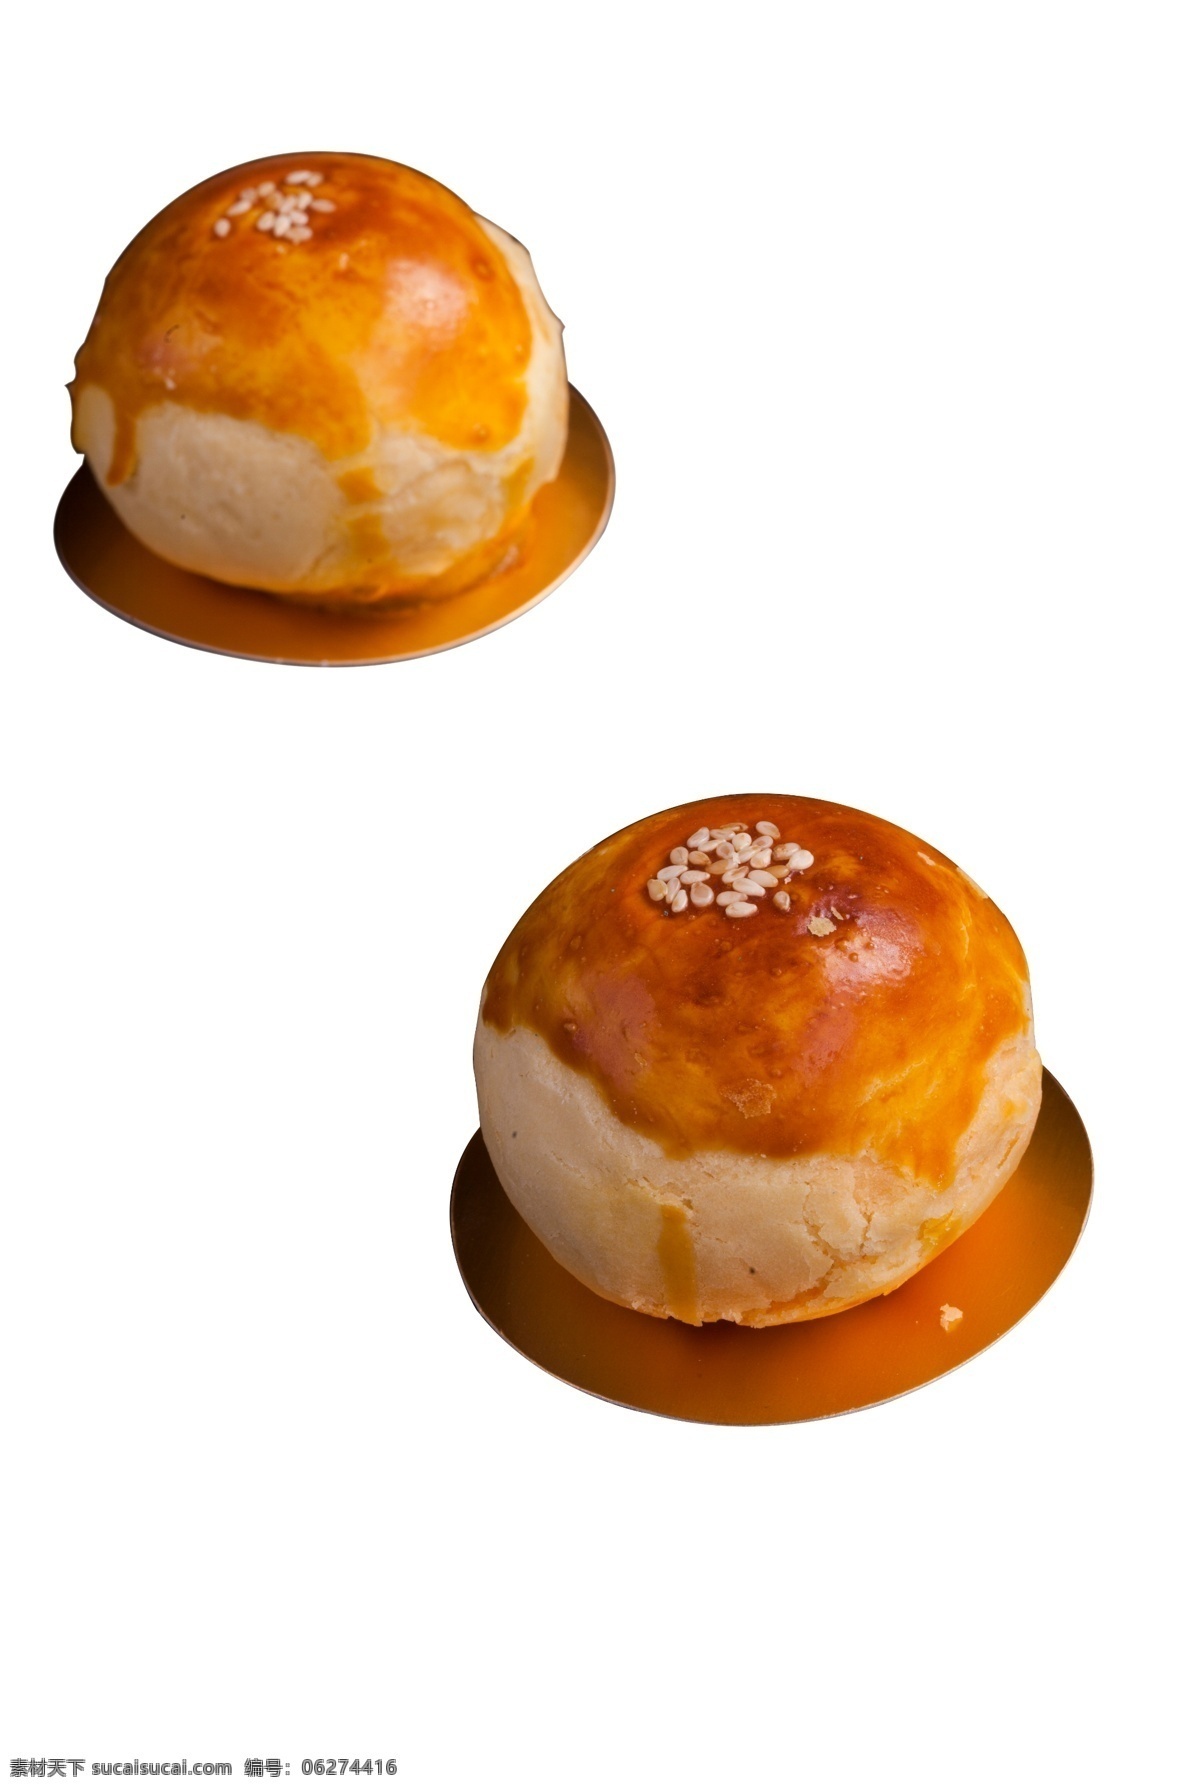 两个 美味 蛋黄 酥 美食 糕点 两个蛋黄酥 传统 小吃 秋季 中秋节 月饼 点心 金黄色 甜品 食物